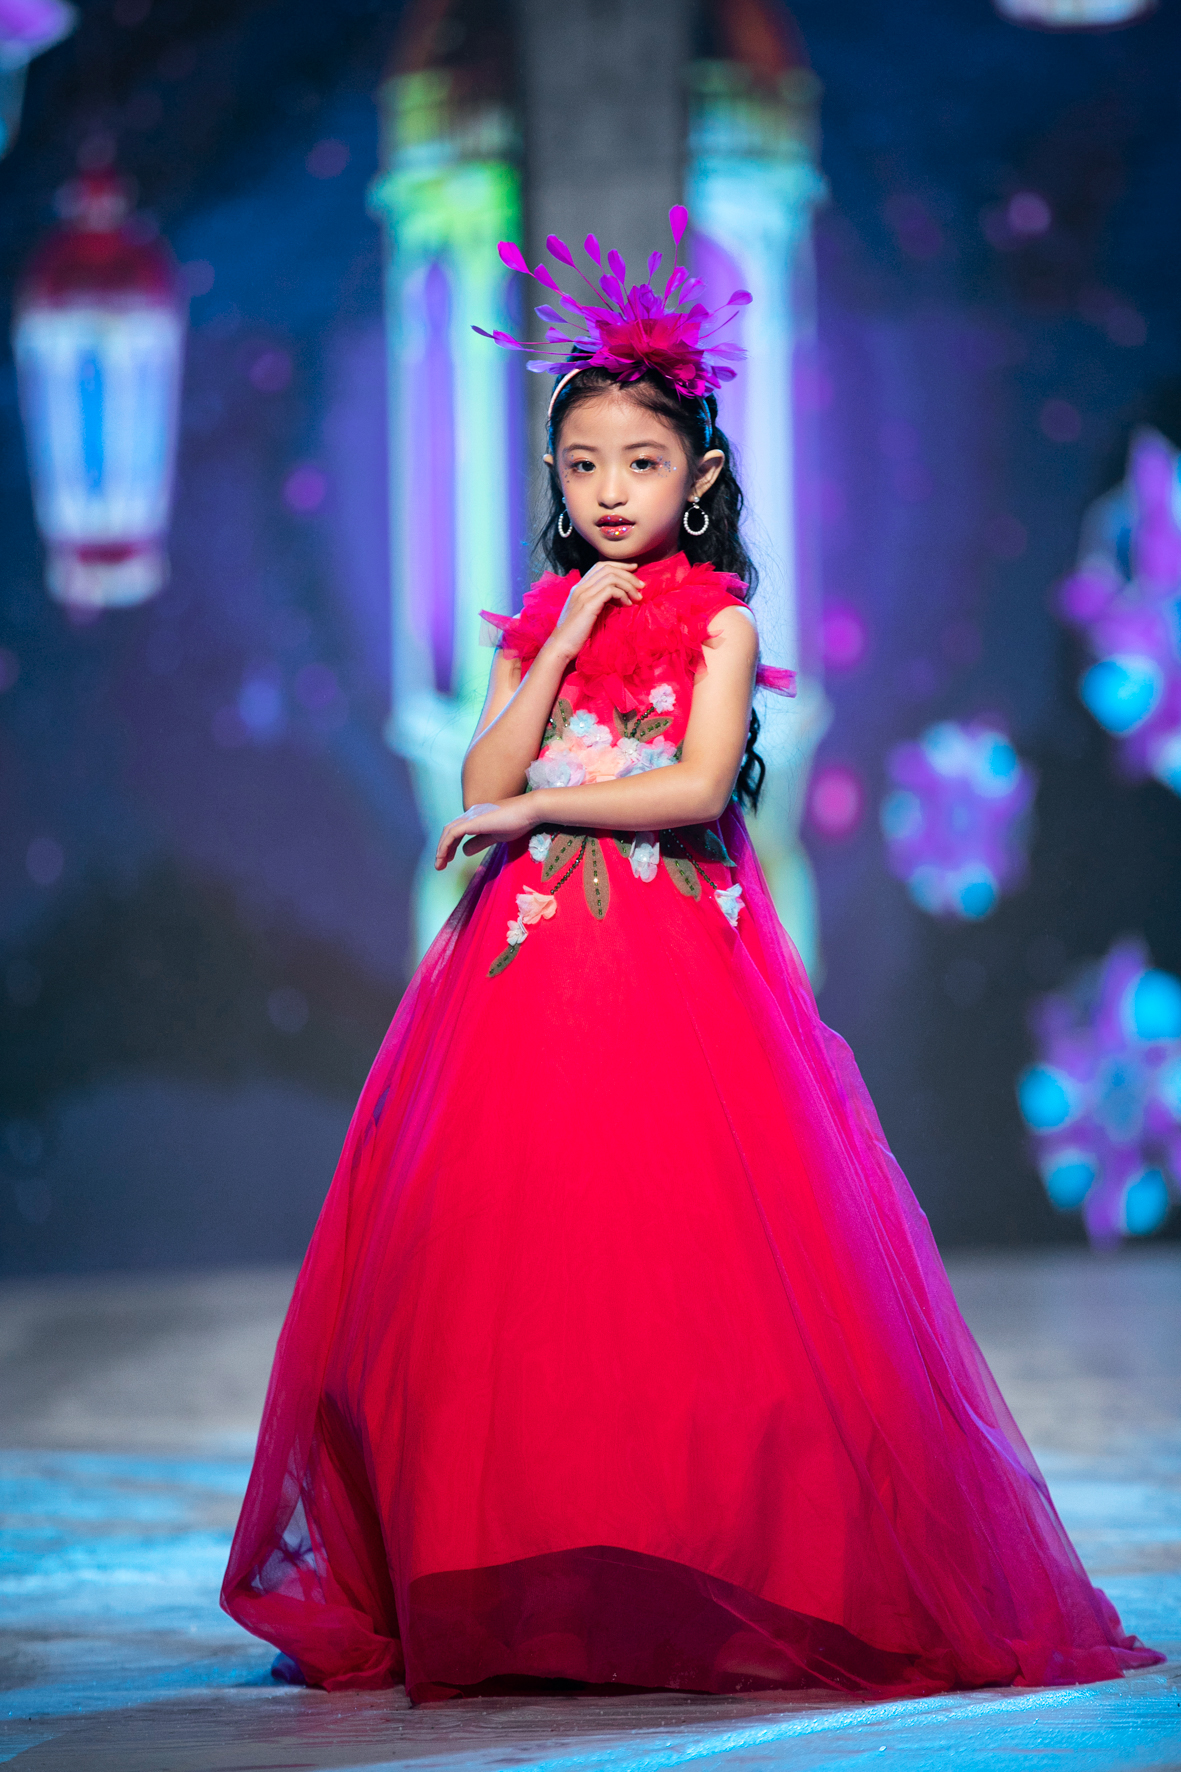 Bé Gái Mặc Váy Hồng Chân Dung Người Đẹp Trẻ Em Trẻ Sơ Sinh Trong Trang Phục  Cổ Tích Hình ảnh Sẵn có - Tải xuống Hình ảnh Ngay bây giờ - iStock